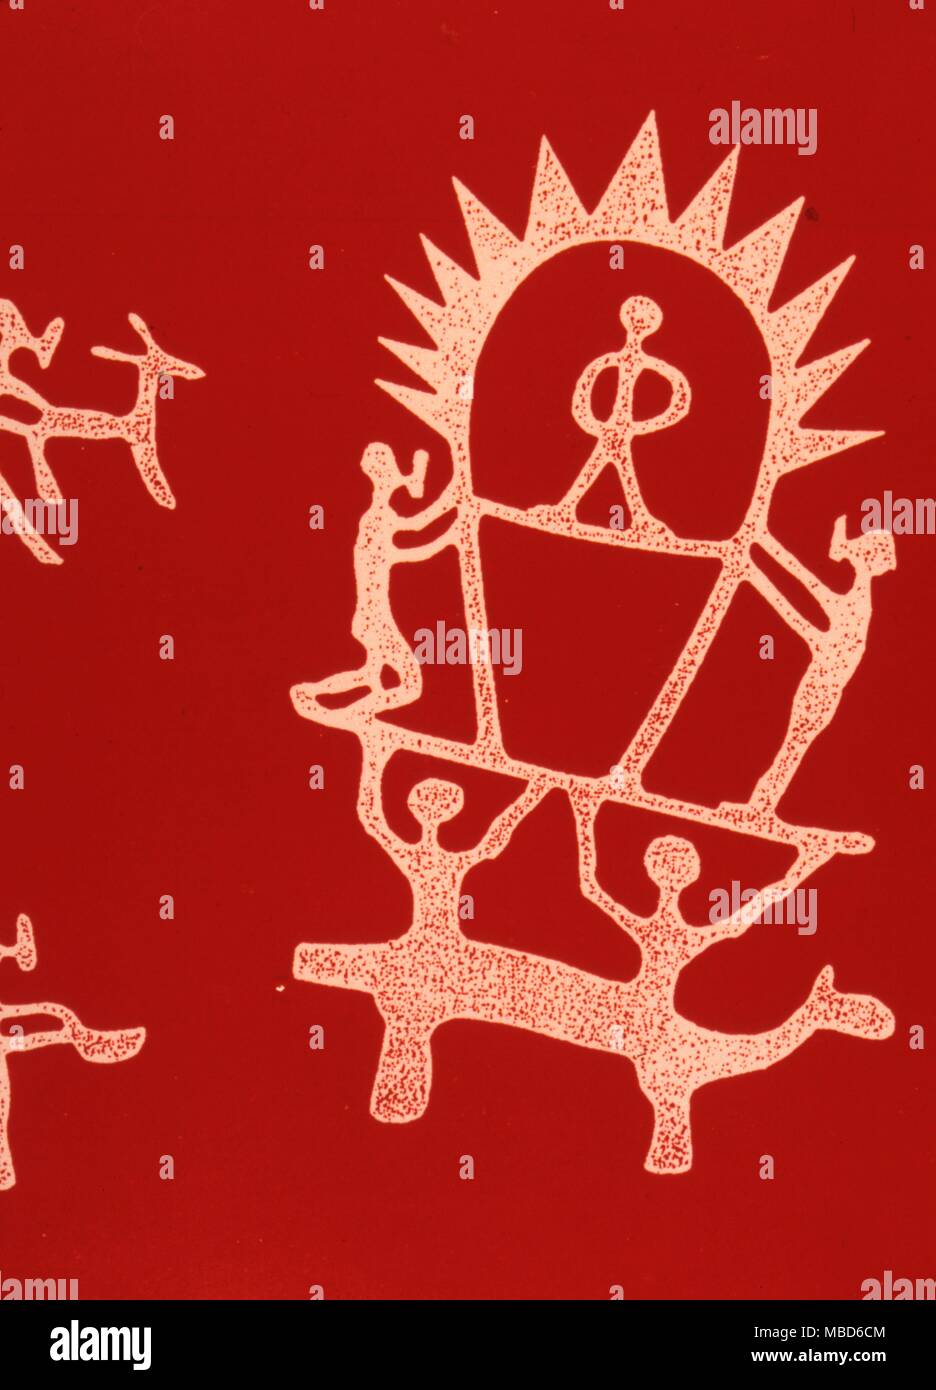 Platz Männer Artwork nach petroglyphen von Russen entdeckten im navoy. Sie ähneln Luristan Kunst, sind aber durch die von Daniken beanspruchten Raum sein - Reisende in einem Luftschiff. Daniken, übrigens reproduziert das Bild vertauscht. Stockfoto